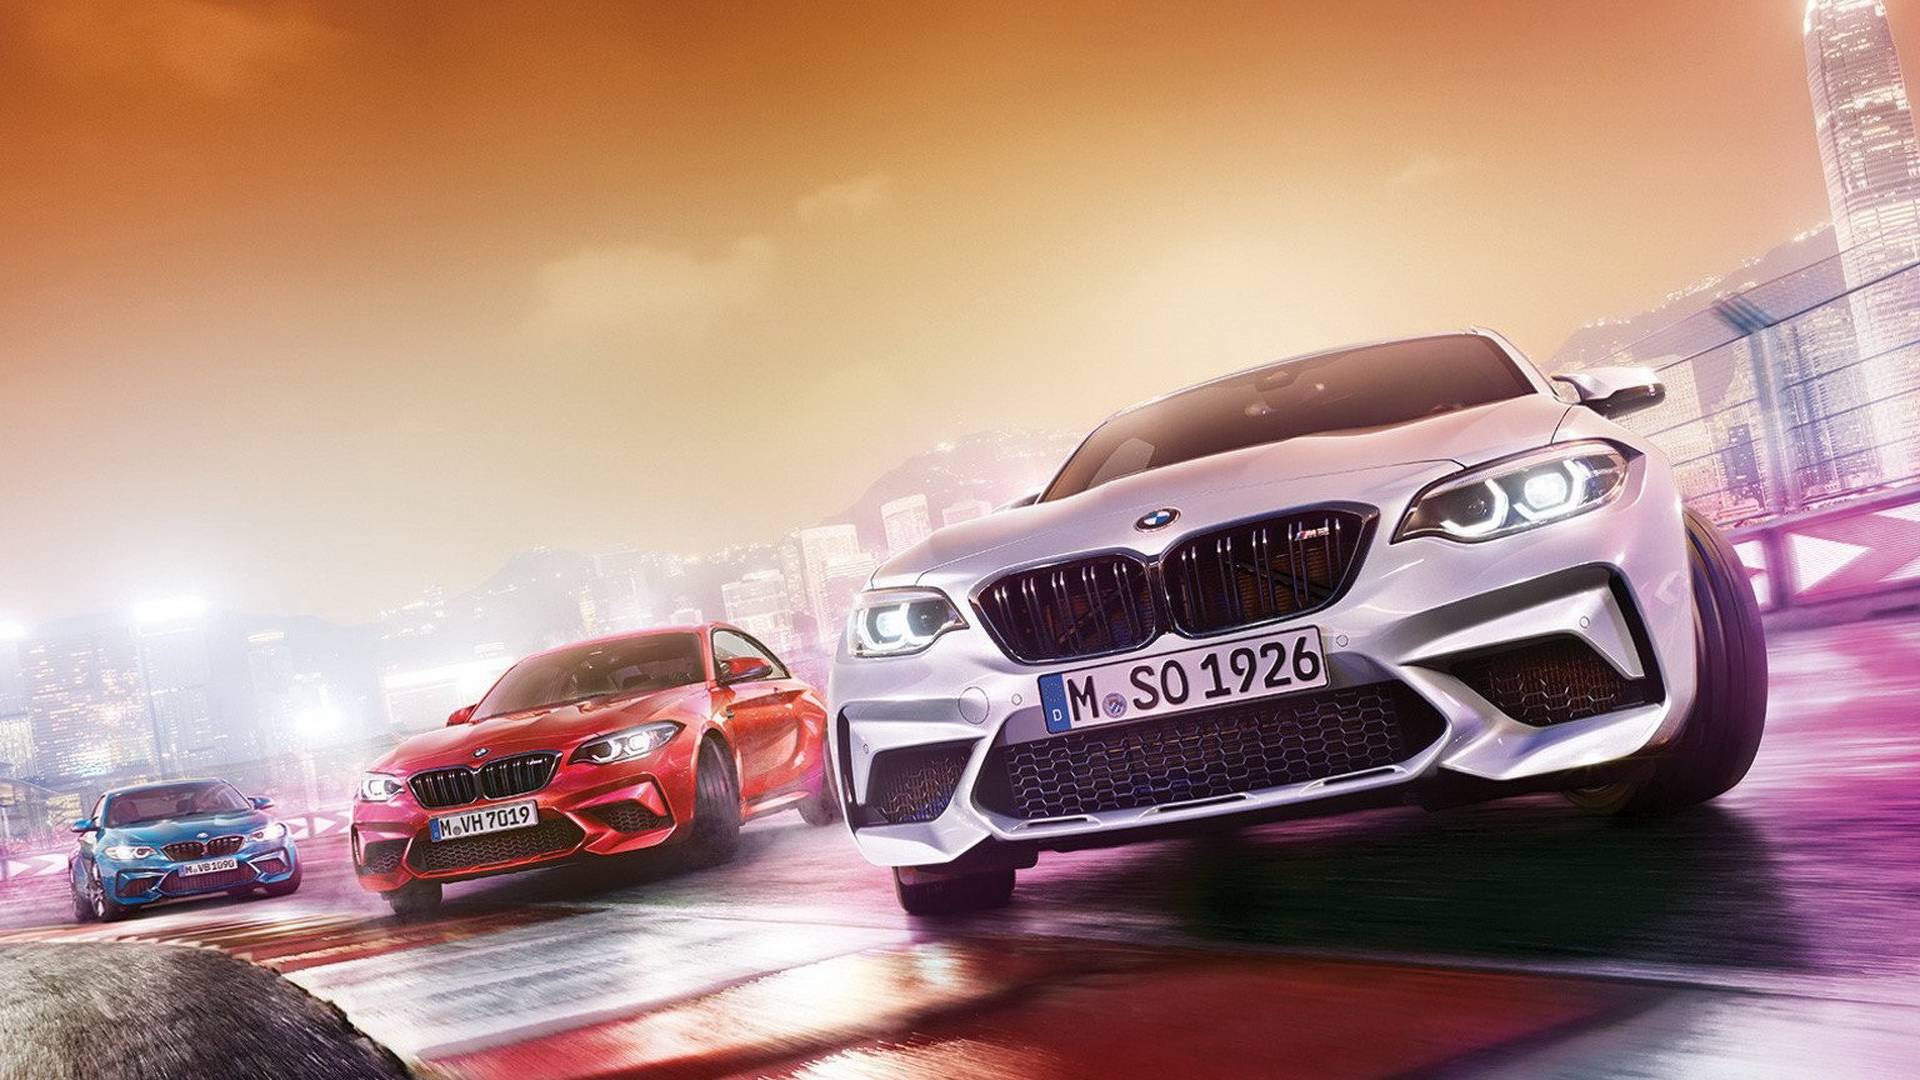 Filtrado: BMW M2 Competition, primeras imágenes oficiales